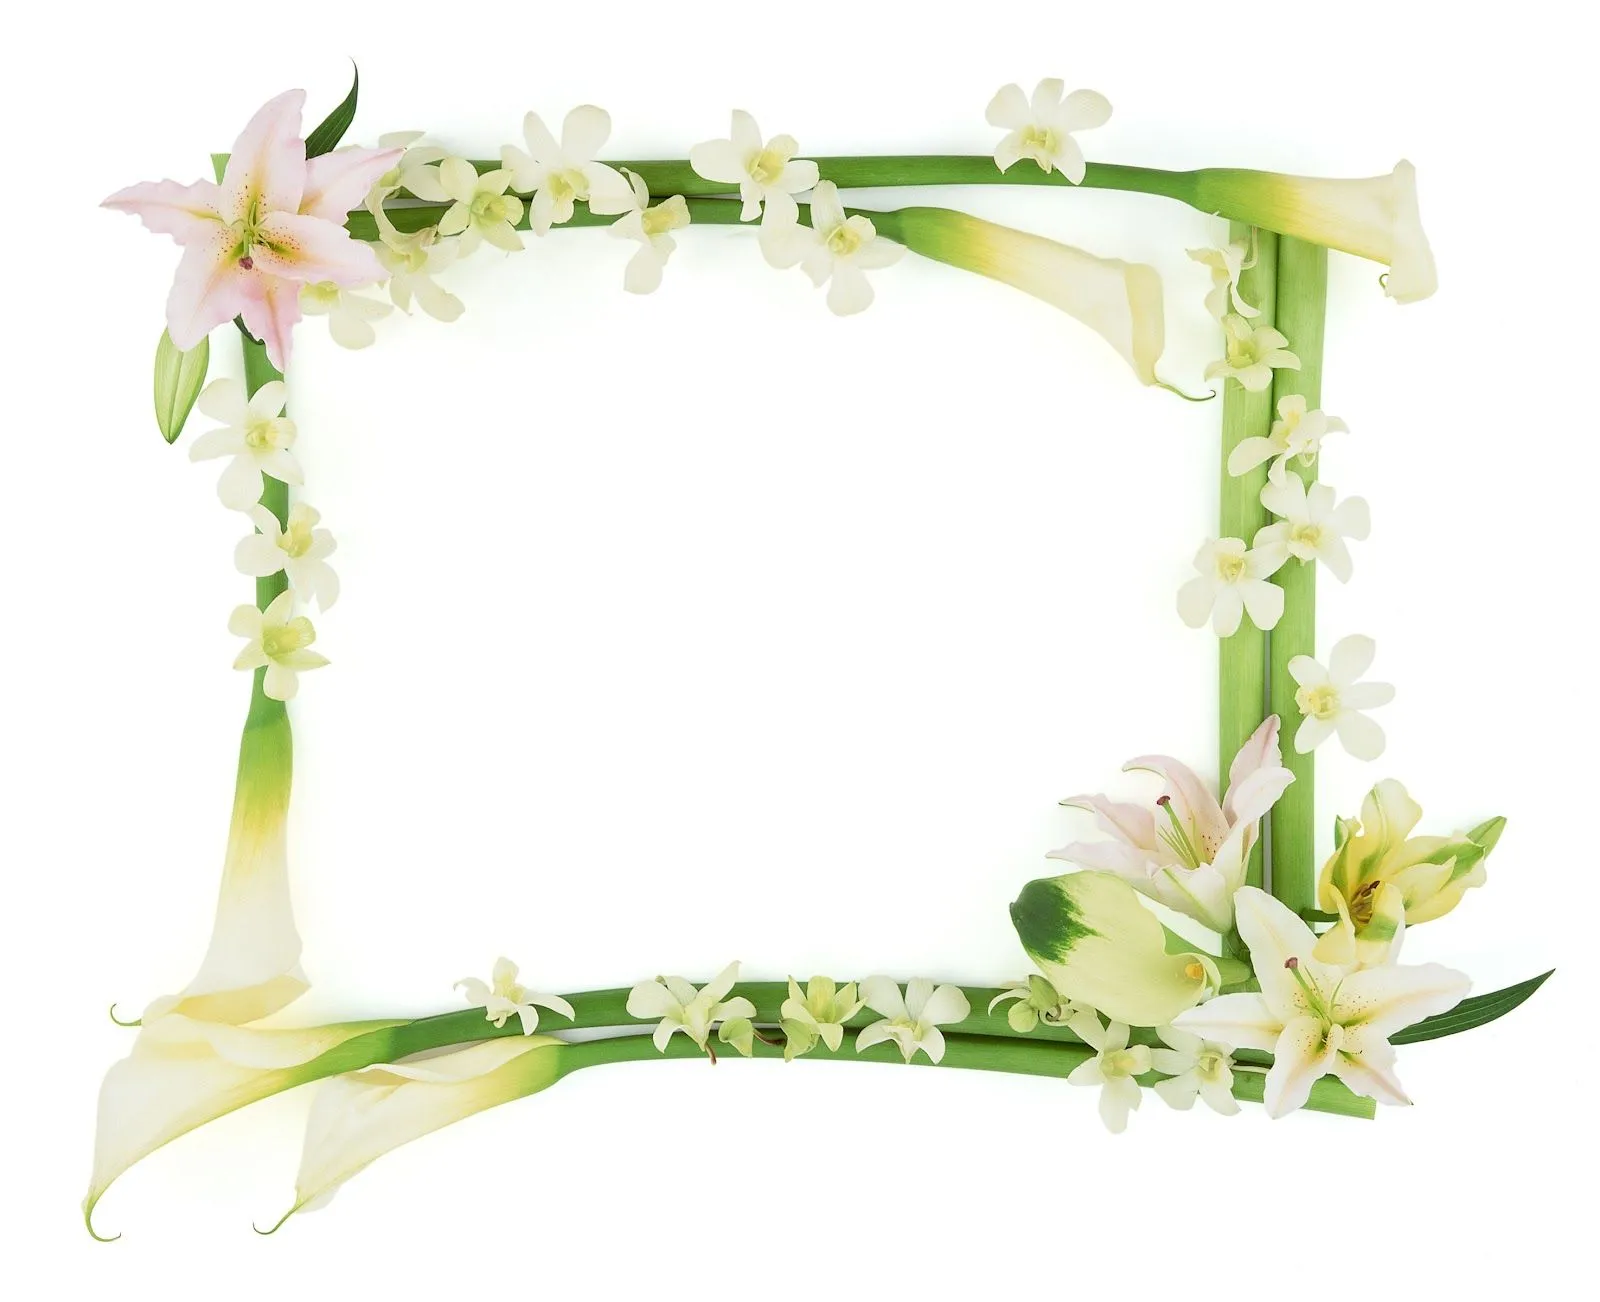 New flower photo frames - Imagui